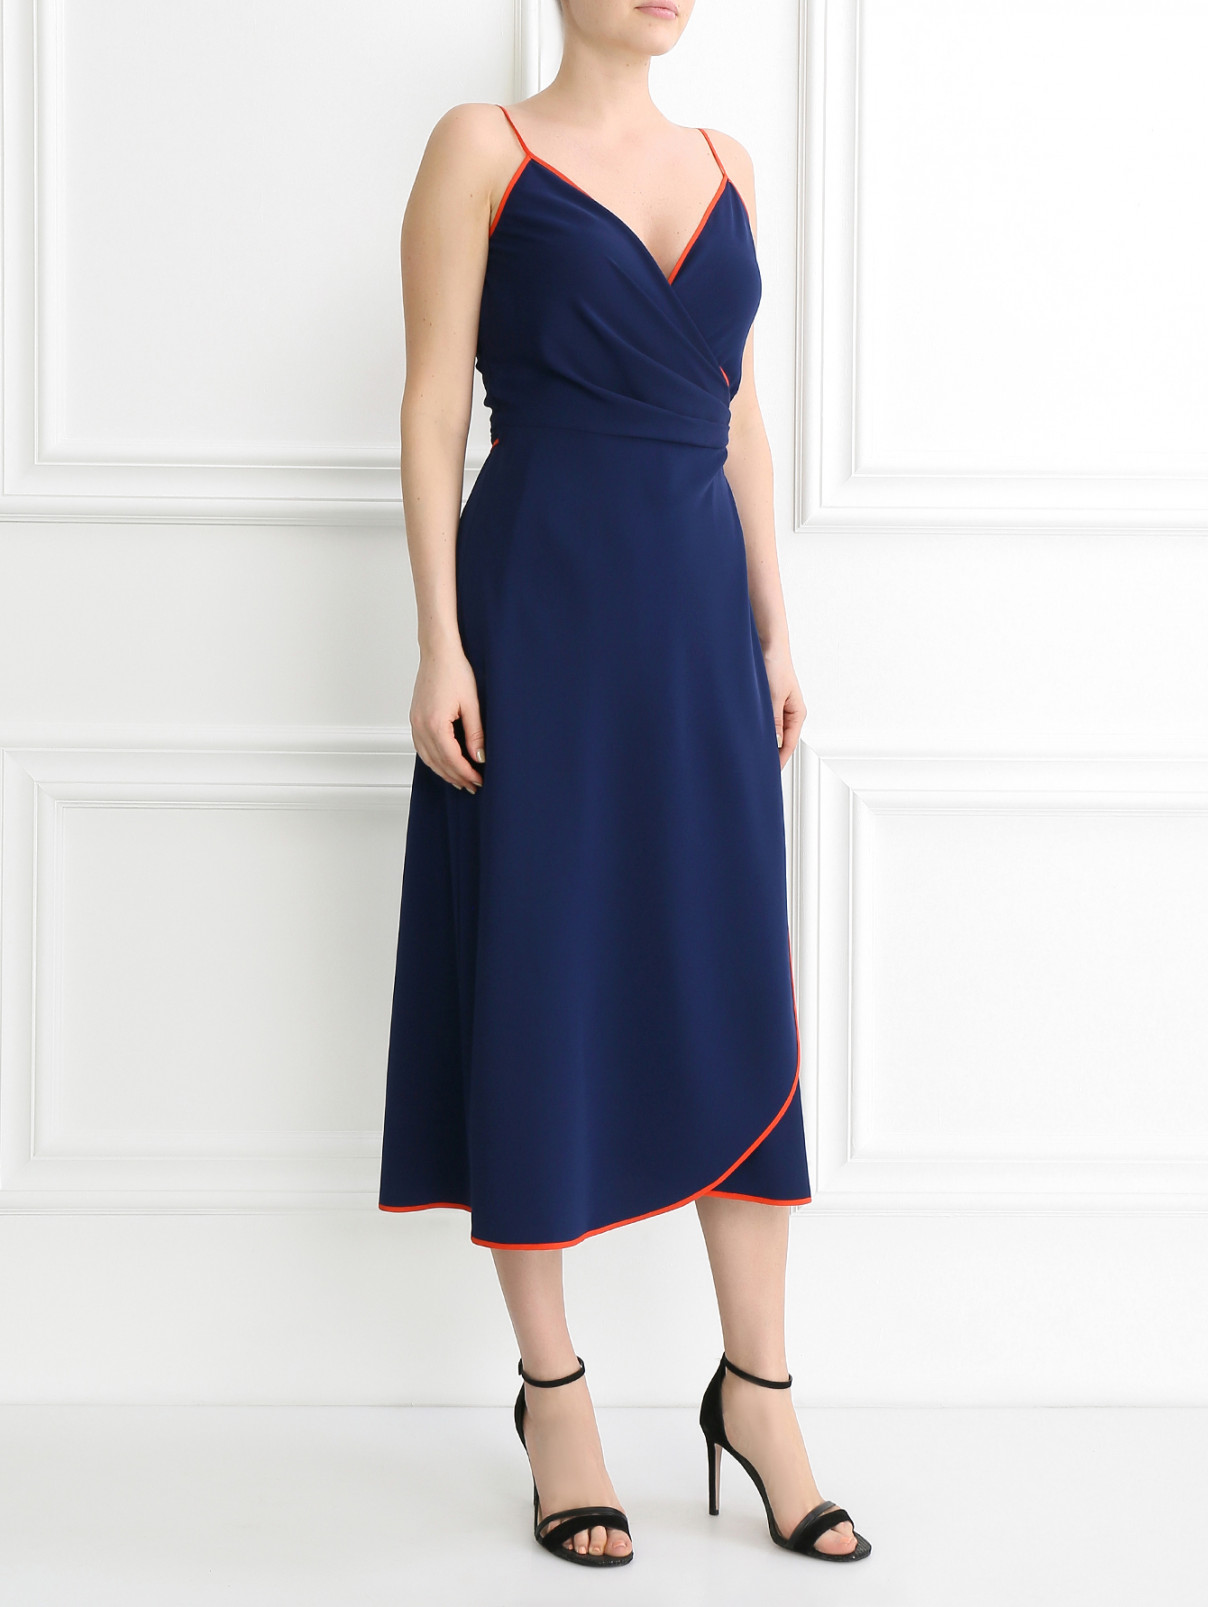 Платье-миди из шелка с запахом Tory Burch  –  Модель Общий вид  – Цвет:  Синий